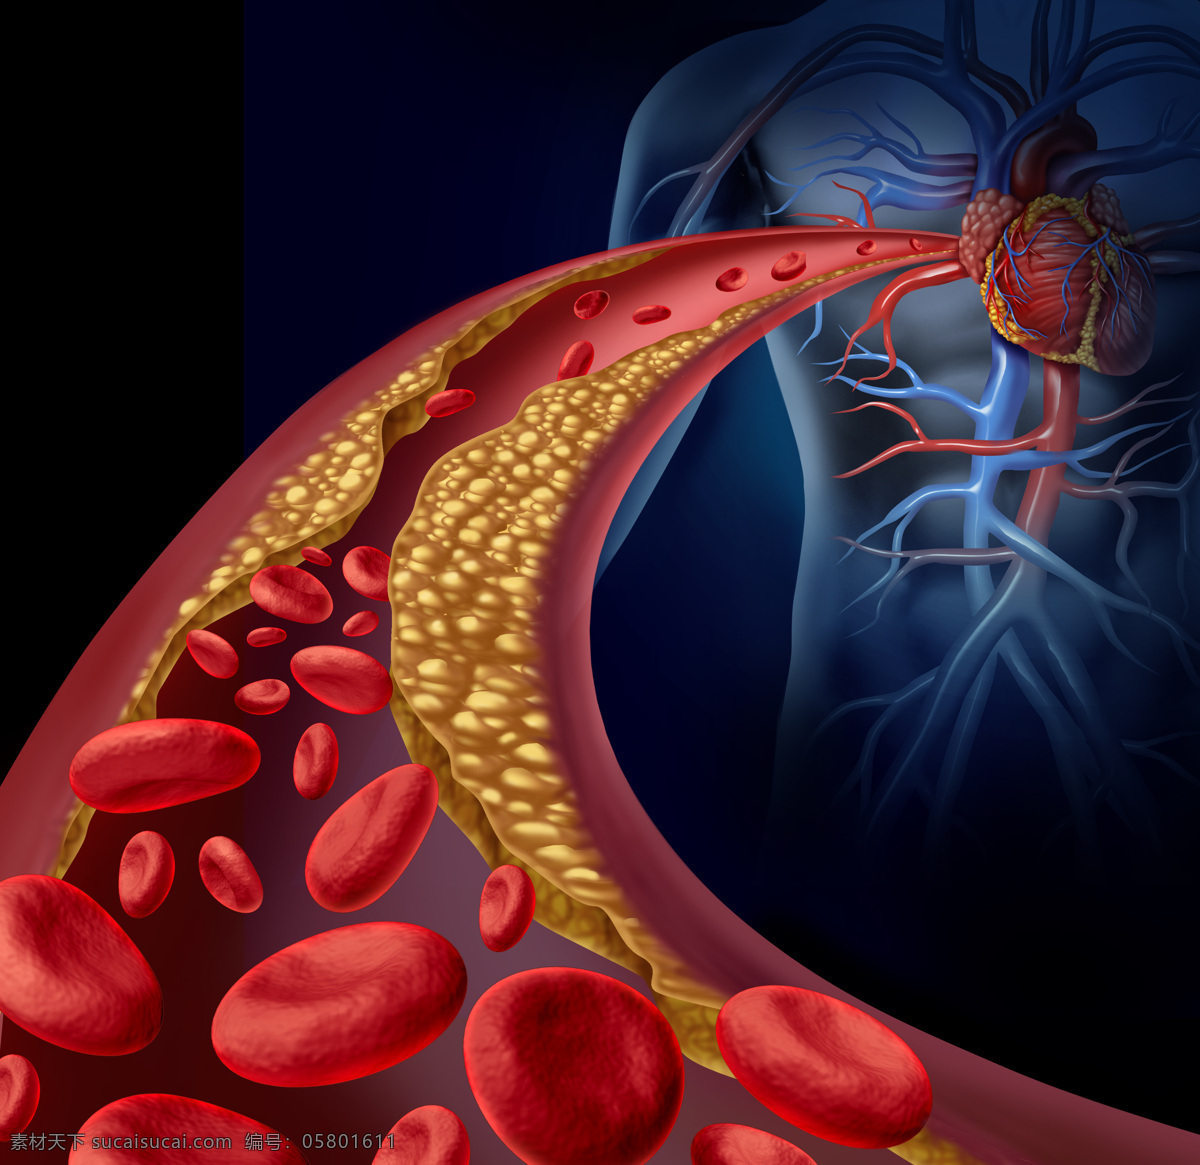 血管疾病 动脉 血红细胞 血管 粥样动脉硬化 3d 医学研究 血液 科学 显微状态 心脏 现代科技 医疗护理